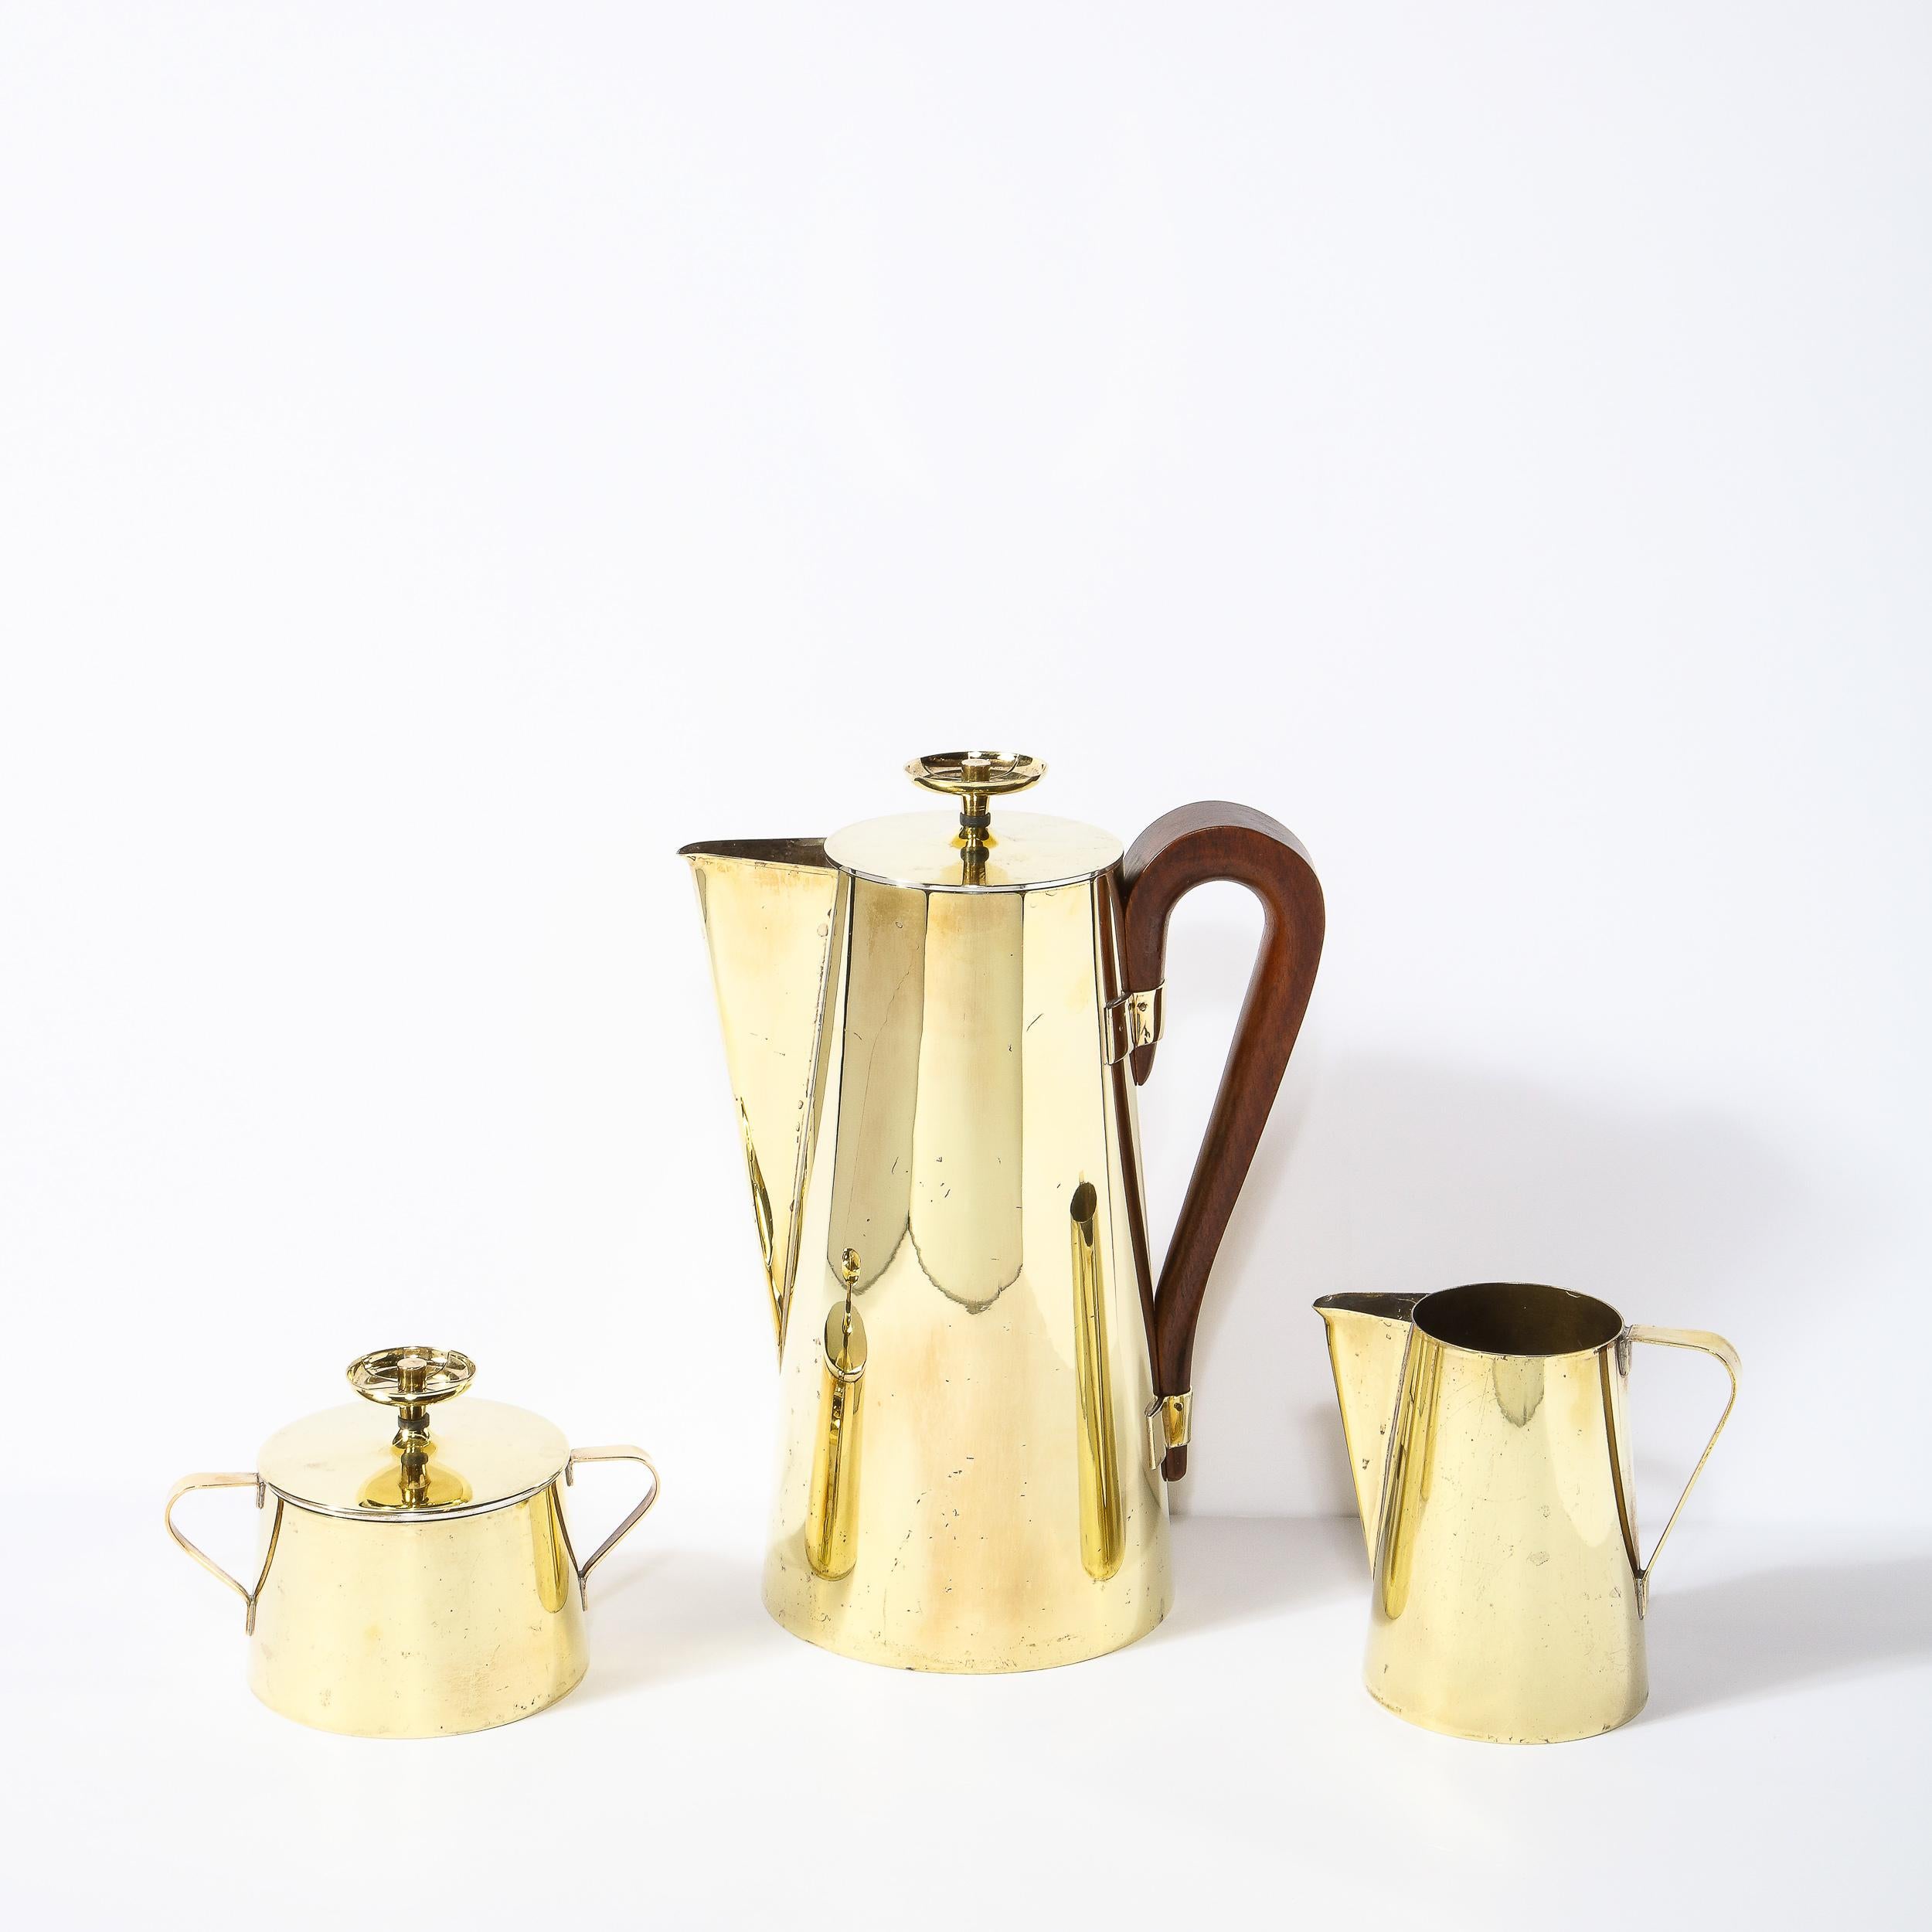 Ce magnifique service à café ou à thé a été conçu par Tommi Parzinger, l'un des plus célèbres designers modernistes du milieu du siècle, pour Dorlyn Silversmiths vers 1960. L'ensemble comprend une théière, un crémier et un sucrier avec couvercle. Le